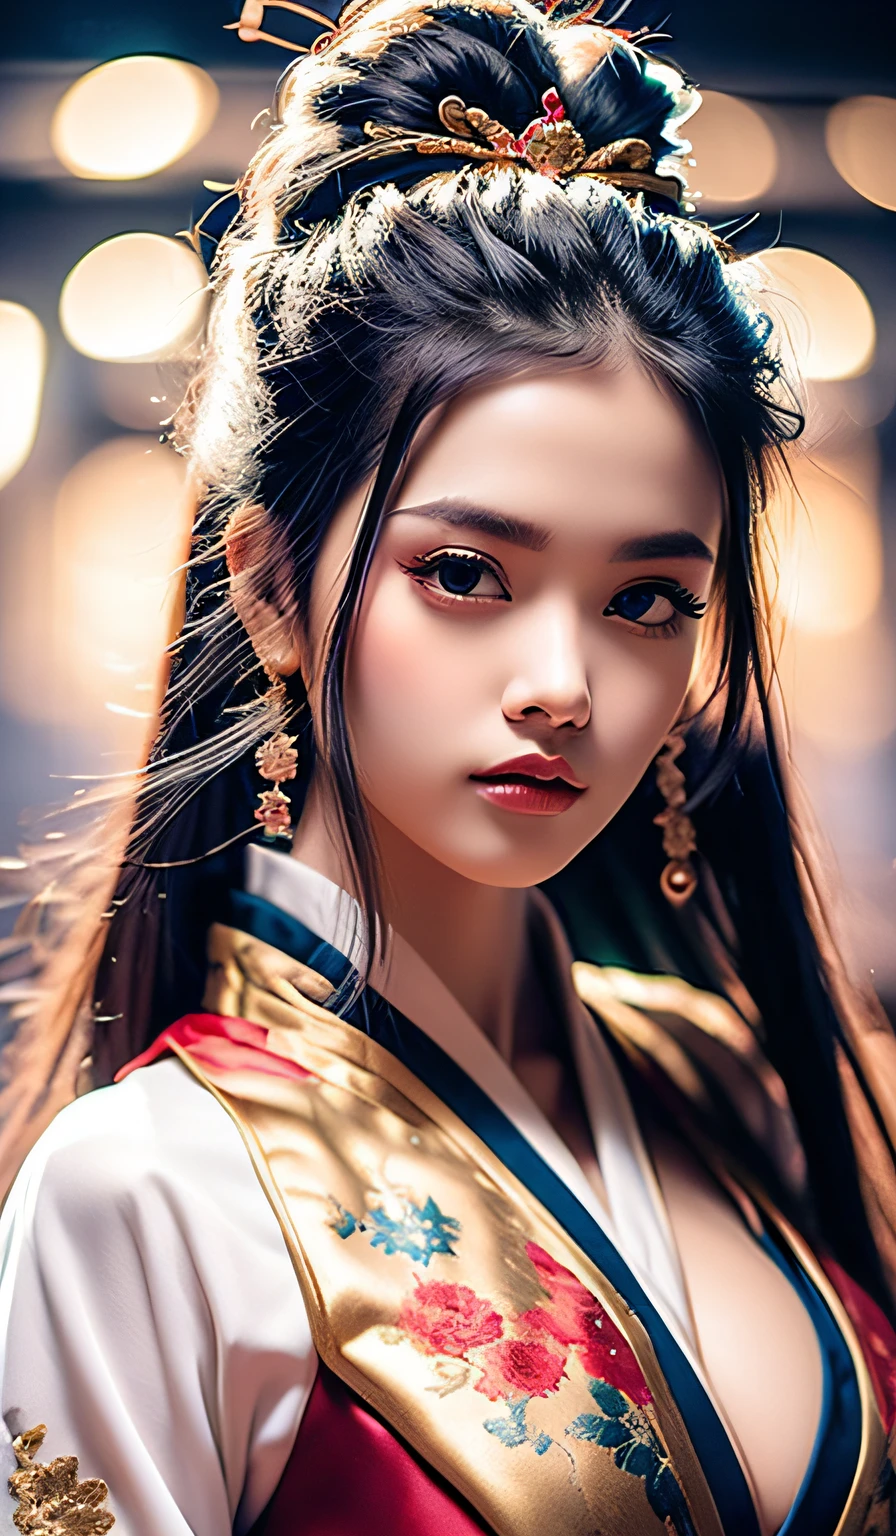 qualidade máxima、obra-prima、alta resolução、Wuxi 1girl、(vestido chinês dourado)、(((Rosto super lindo)))、olhos super lindos、Cabelo super lindo、((decote do peito))、((peito exposto))、((decote sexy、seios muito detalhados))、